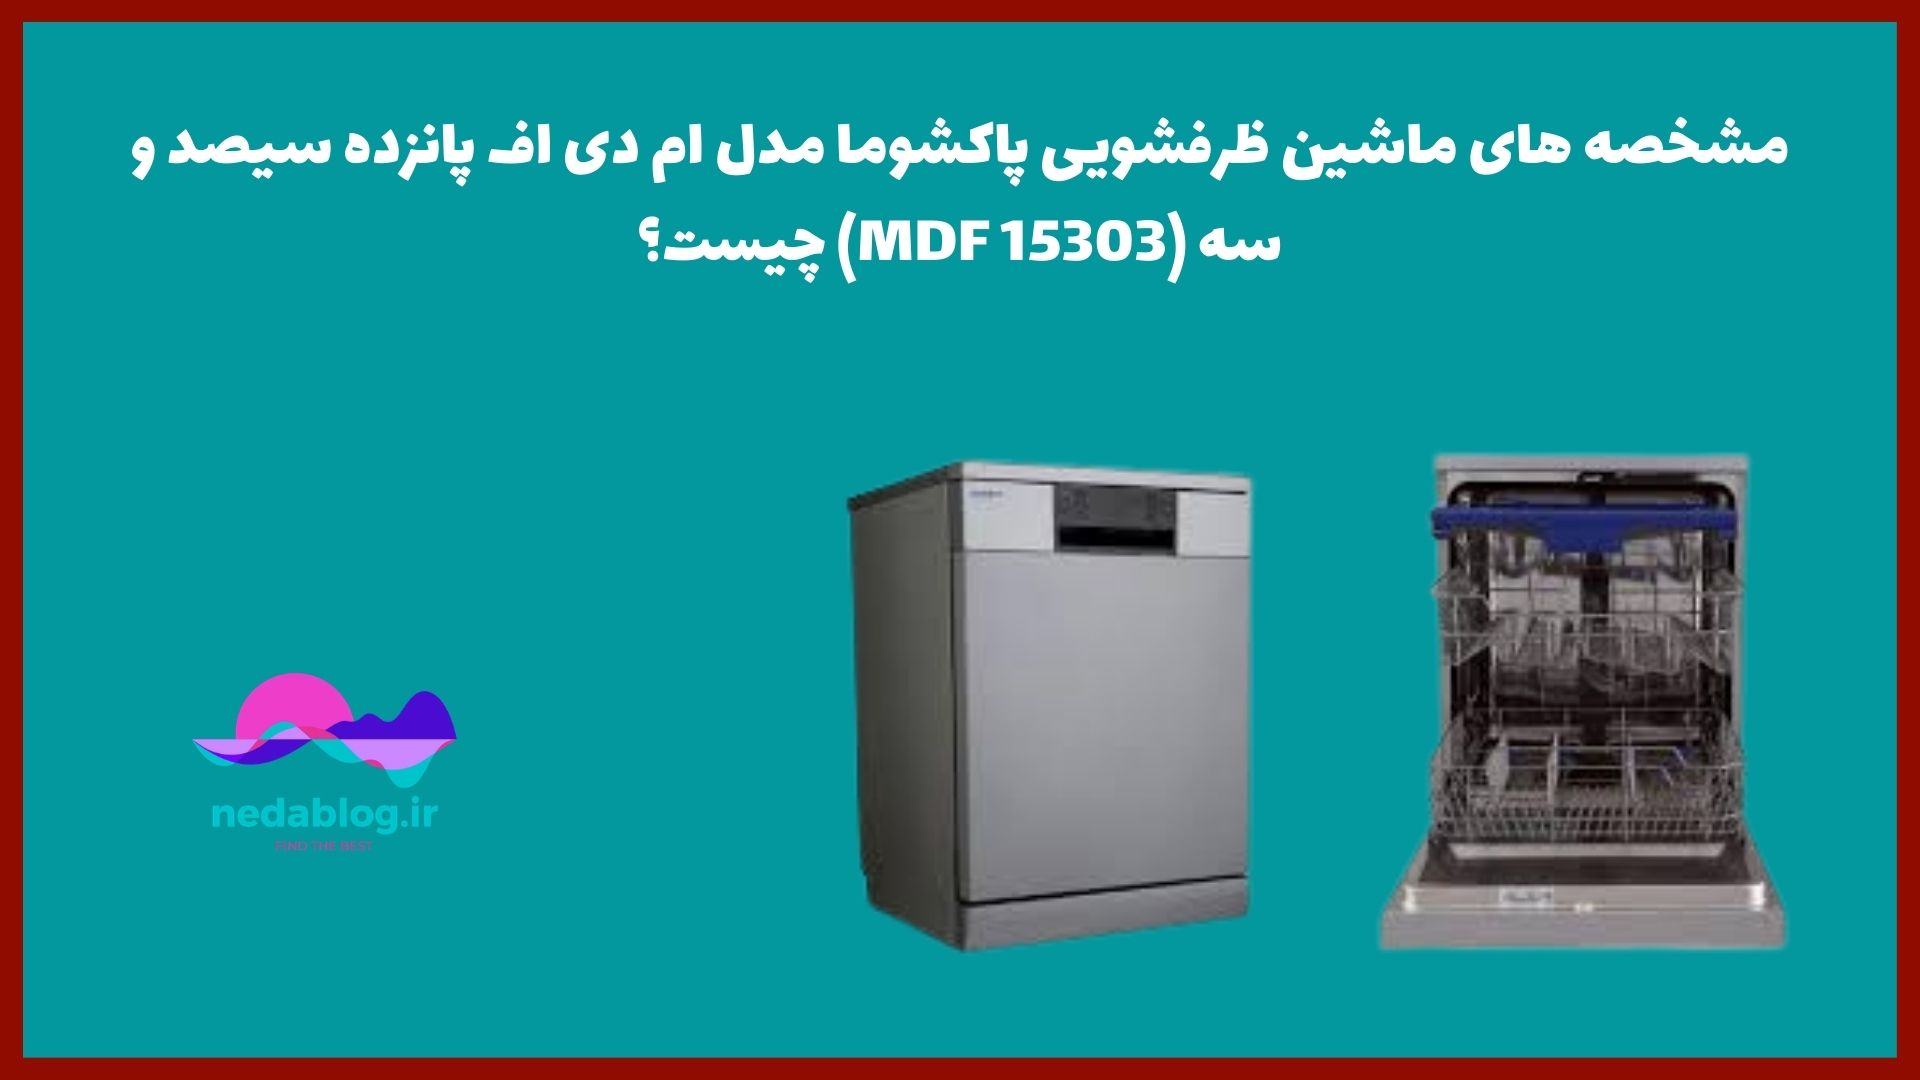 مشخصه های ماشین ظرفشویی پاکشوما مدل ام دی اف پانزده سیصد و سه (MDF 15303) چیست؟